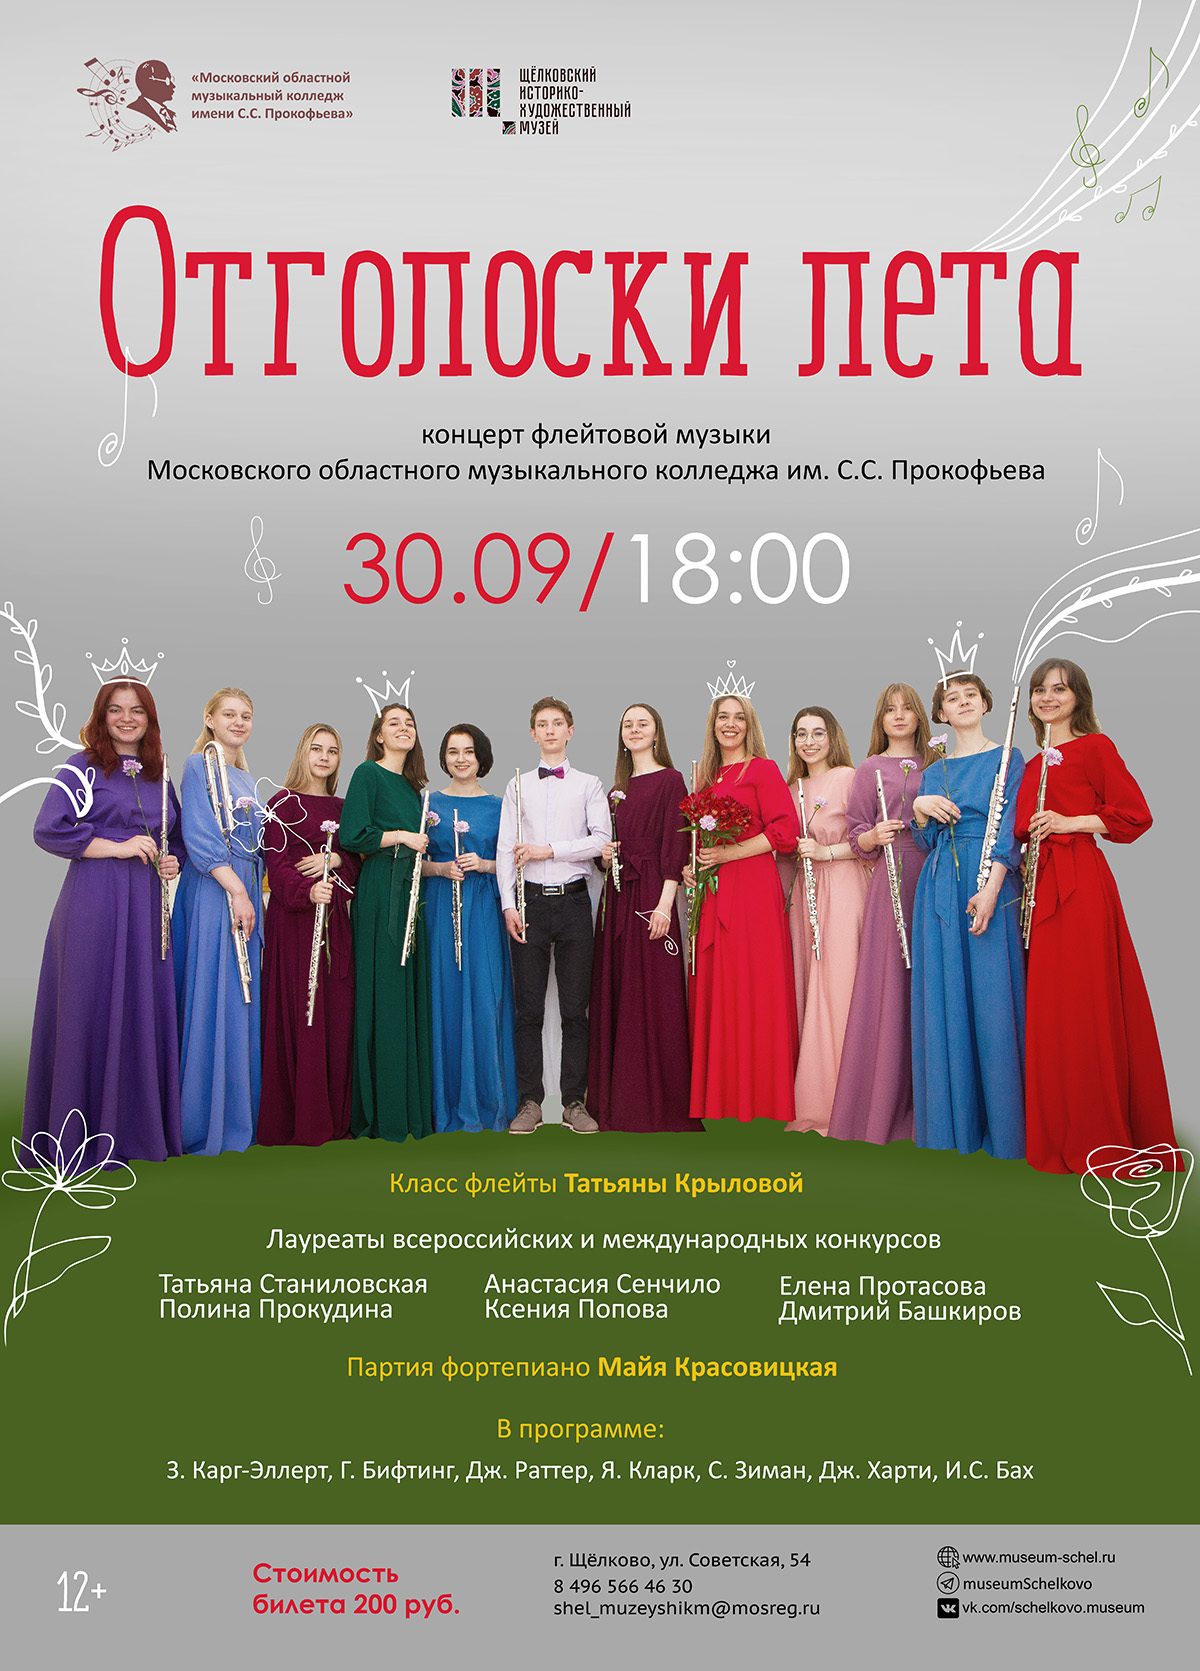 Концерт флейтовой музыки «Отголоски лета»